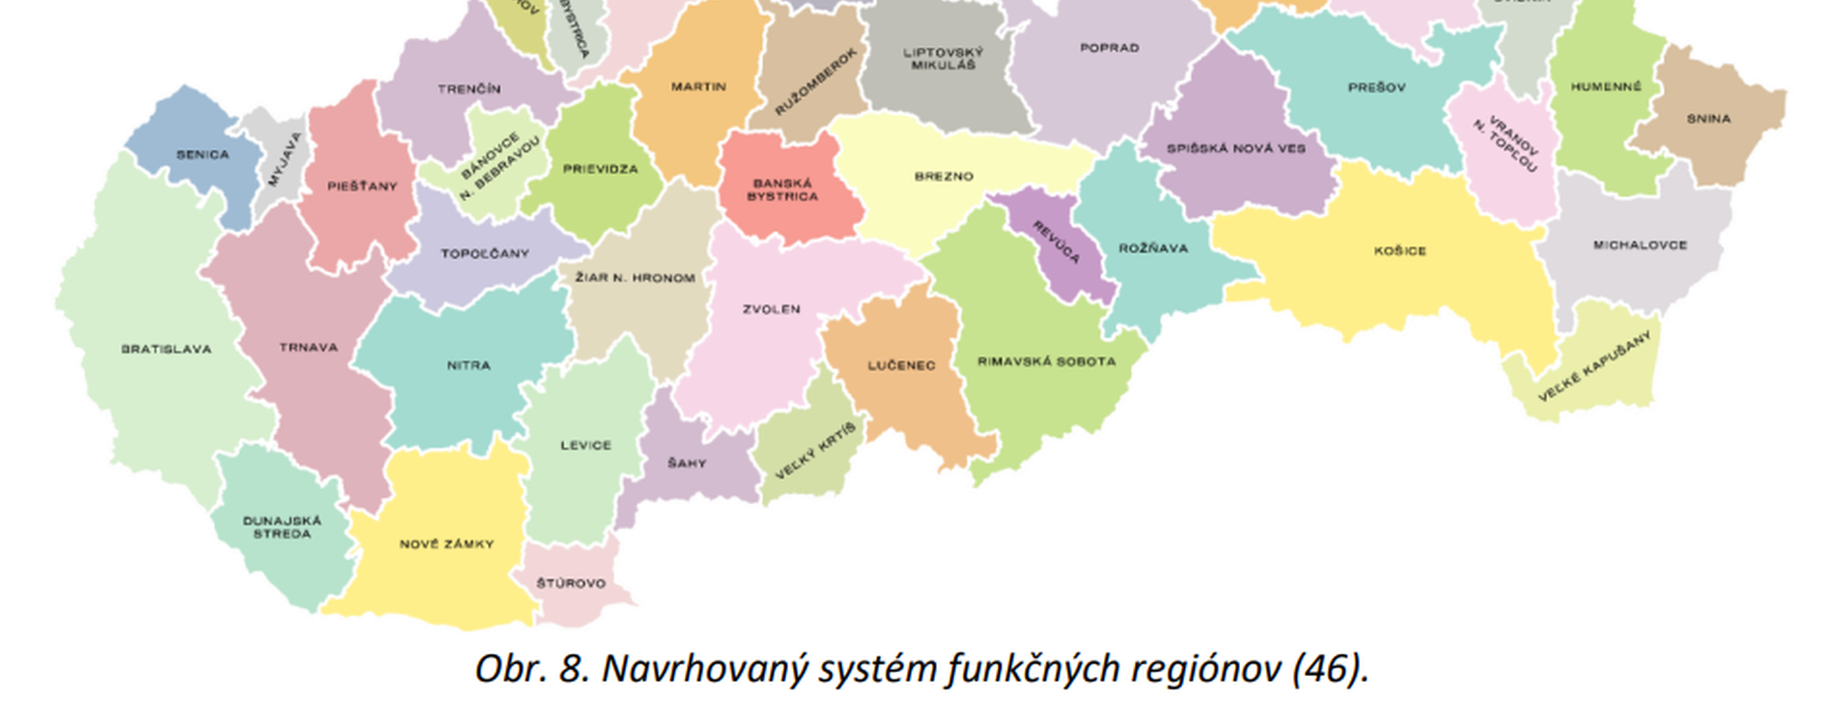 Szlovak kozigazgatasi reform jarasok